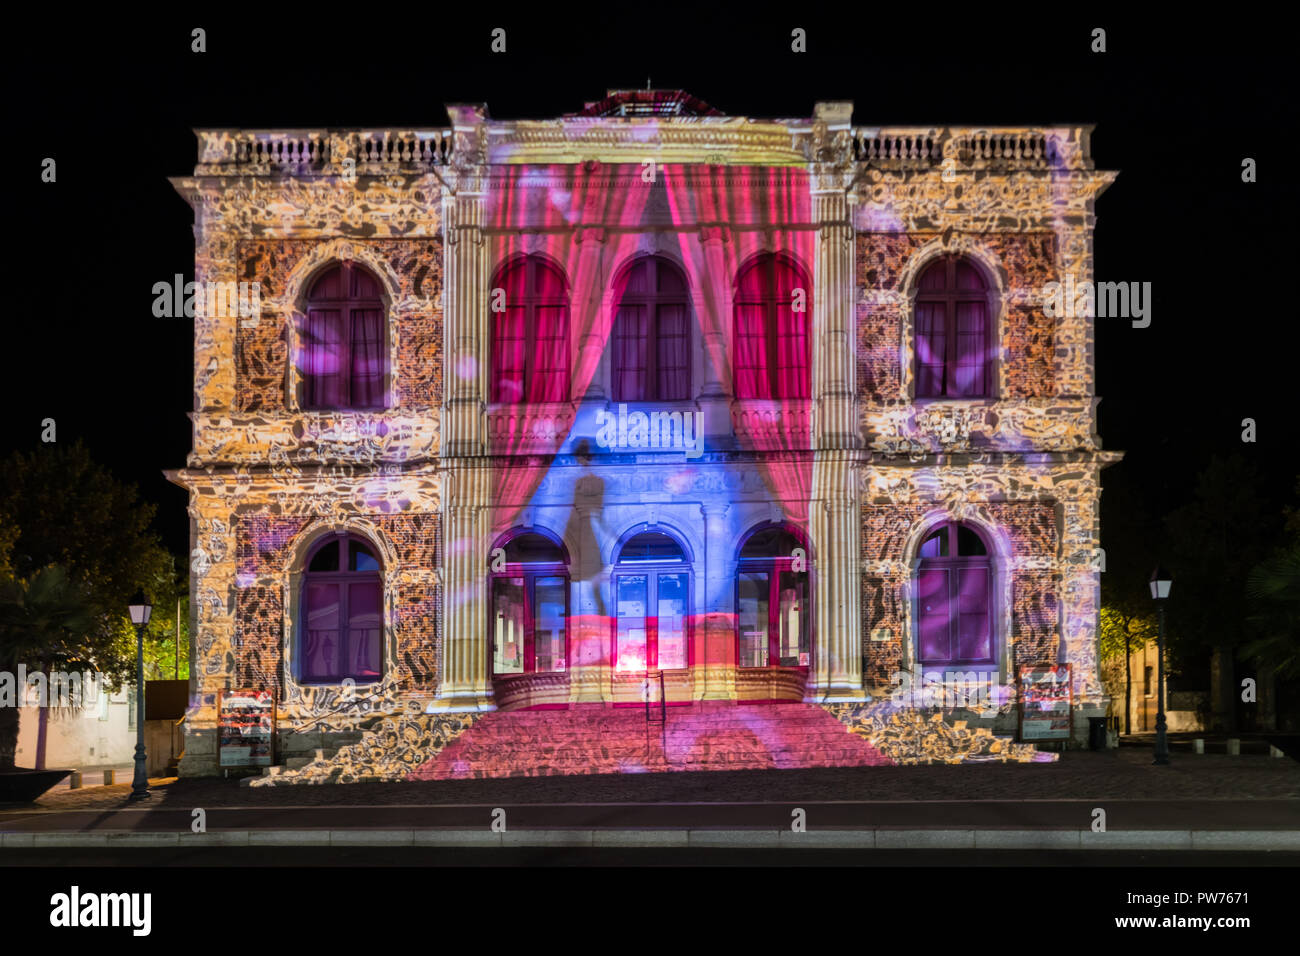 La façade de l'immeuble lumière festival Chartres en France Banque D'Images